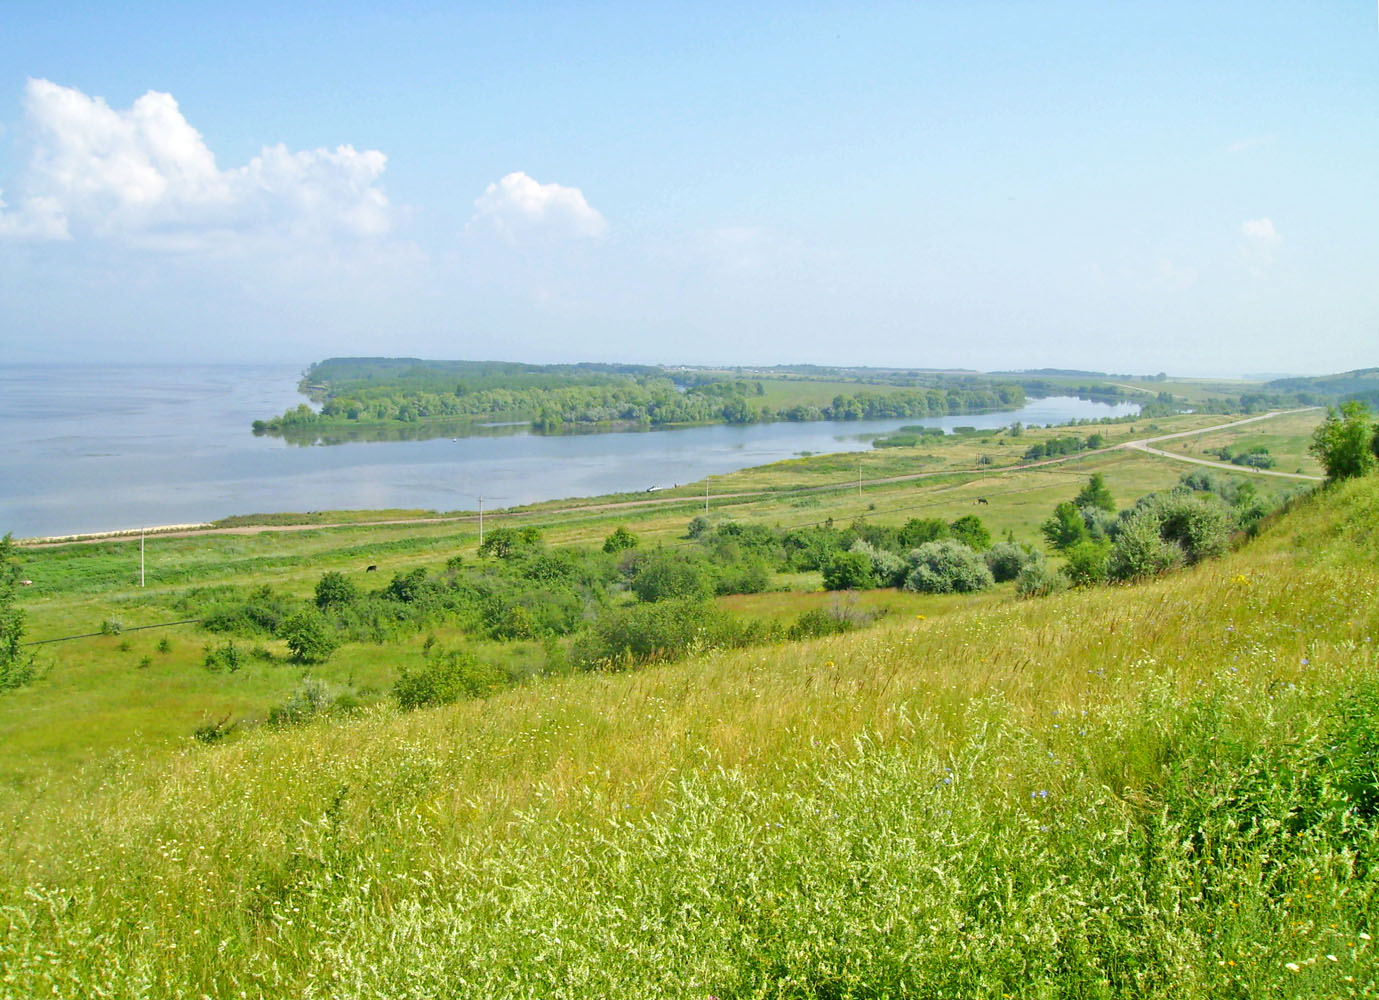 Саратовское водохранилище, image of landscape/habitat.